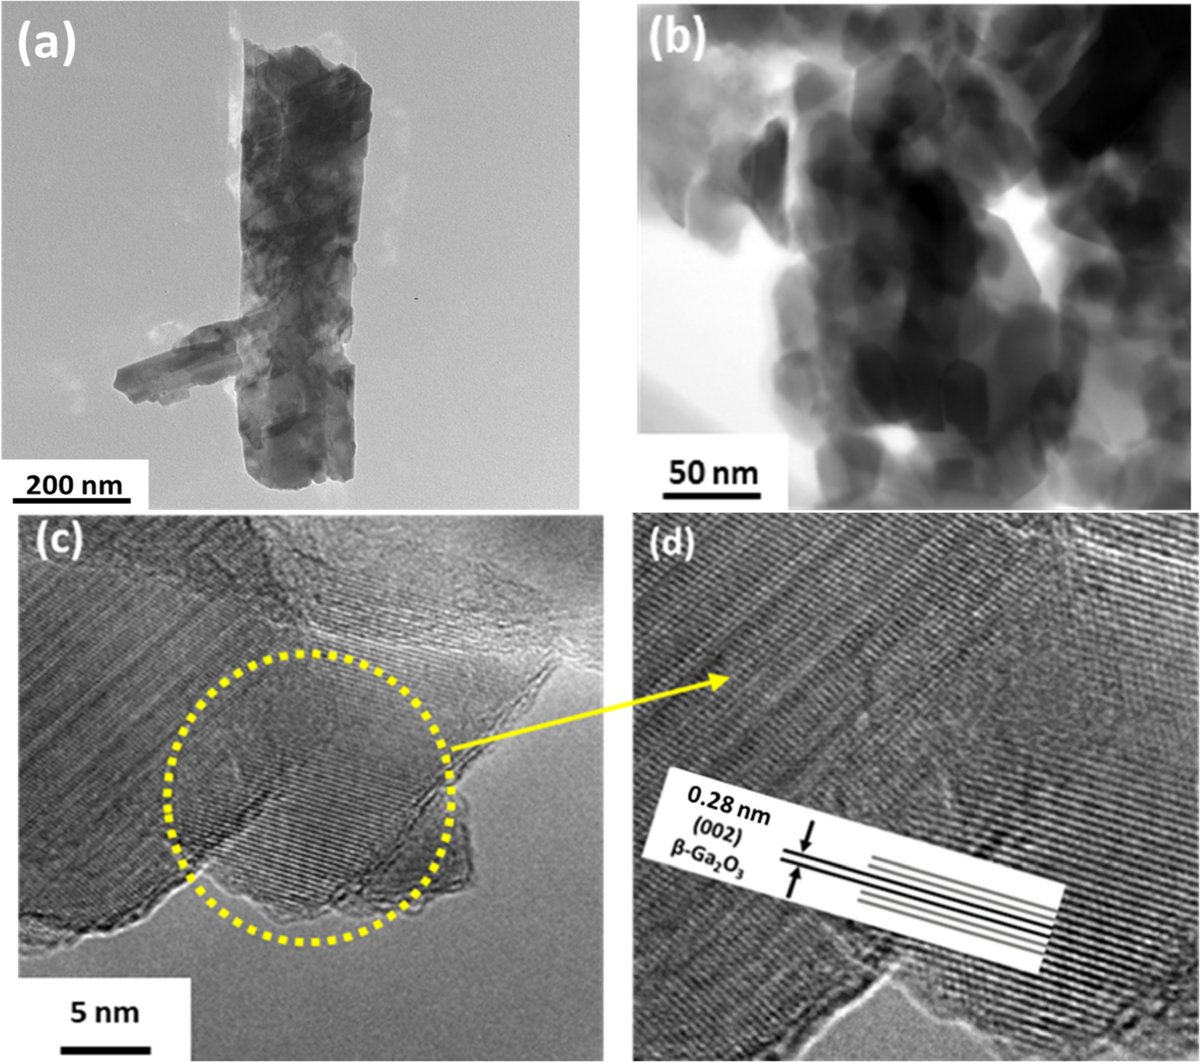 β-Ga2O3 nanostructures for photocatalytic degradation of red amaranth toxic dye @UABC_oficial @UABC_oficial #wastewater #nanotechnology ow.ly/fTpb50RvKxP